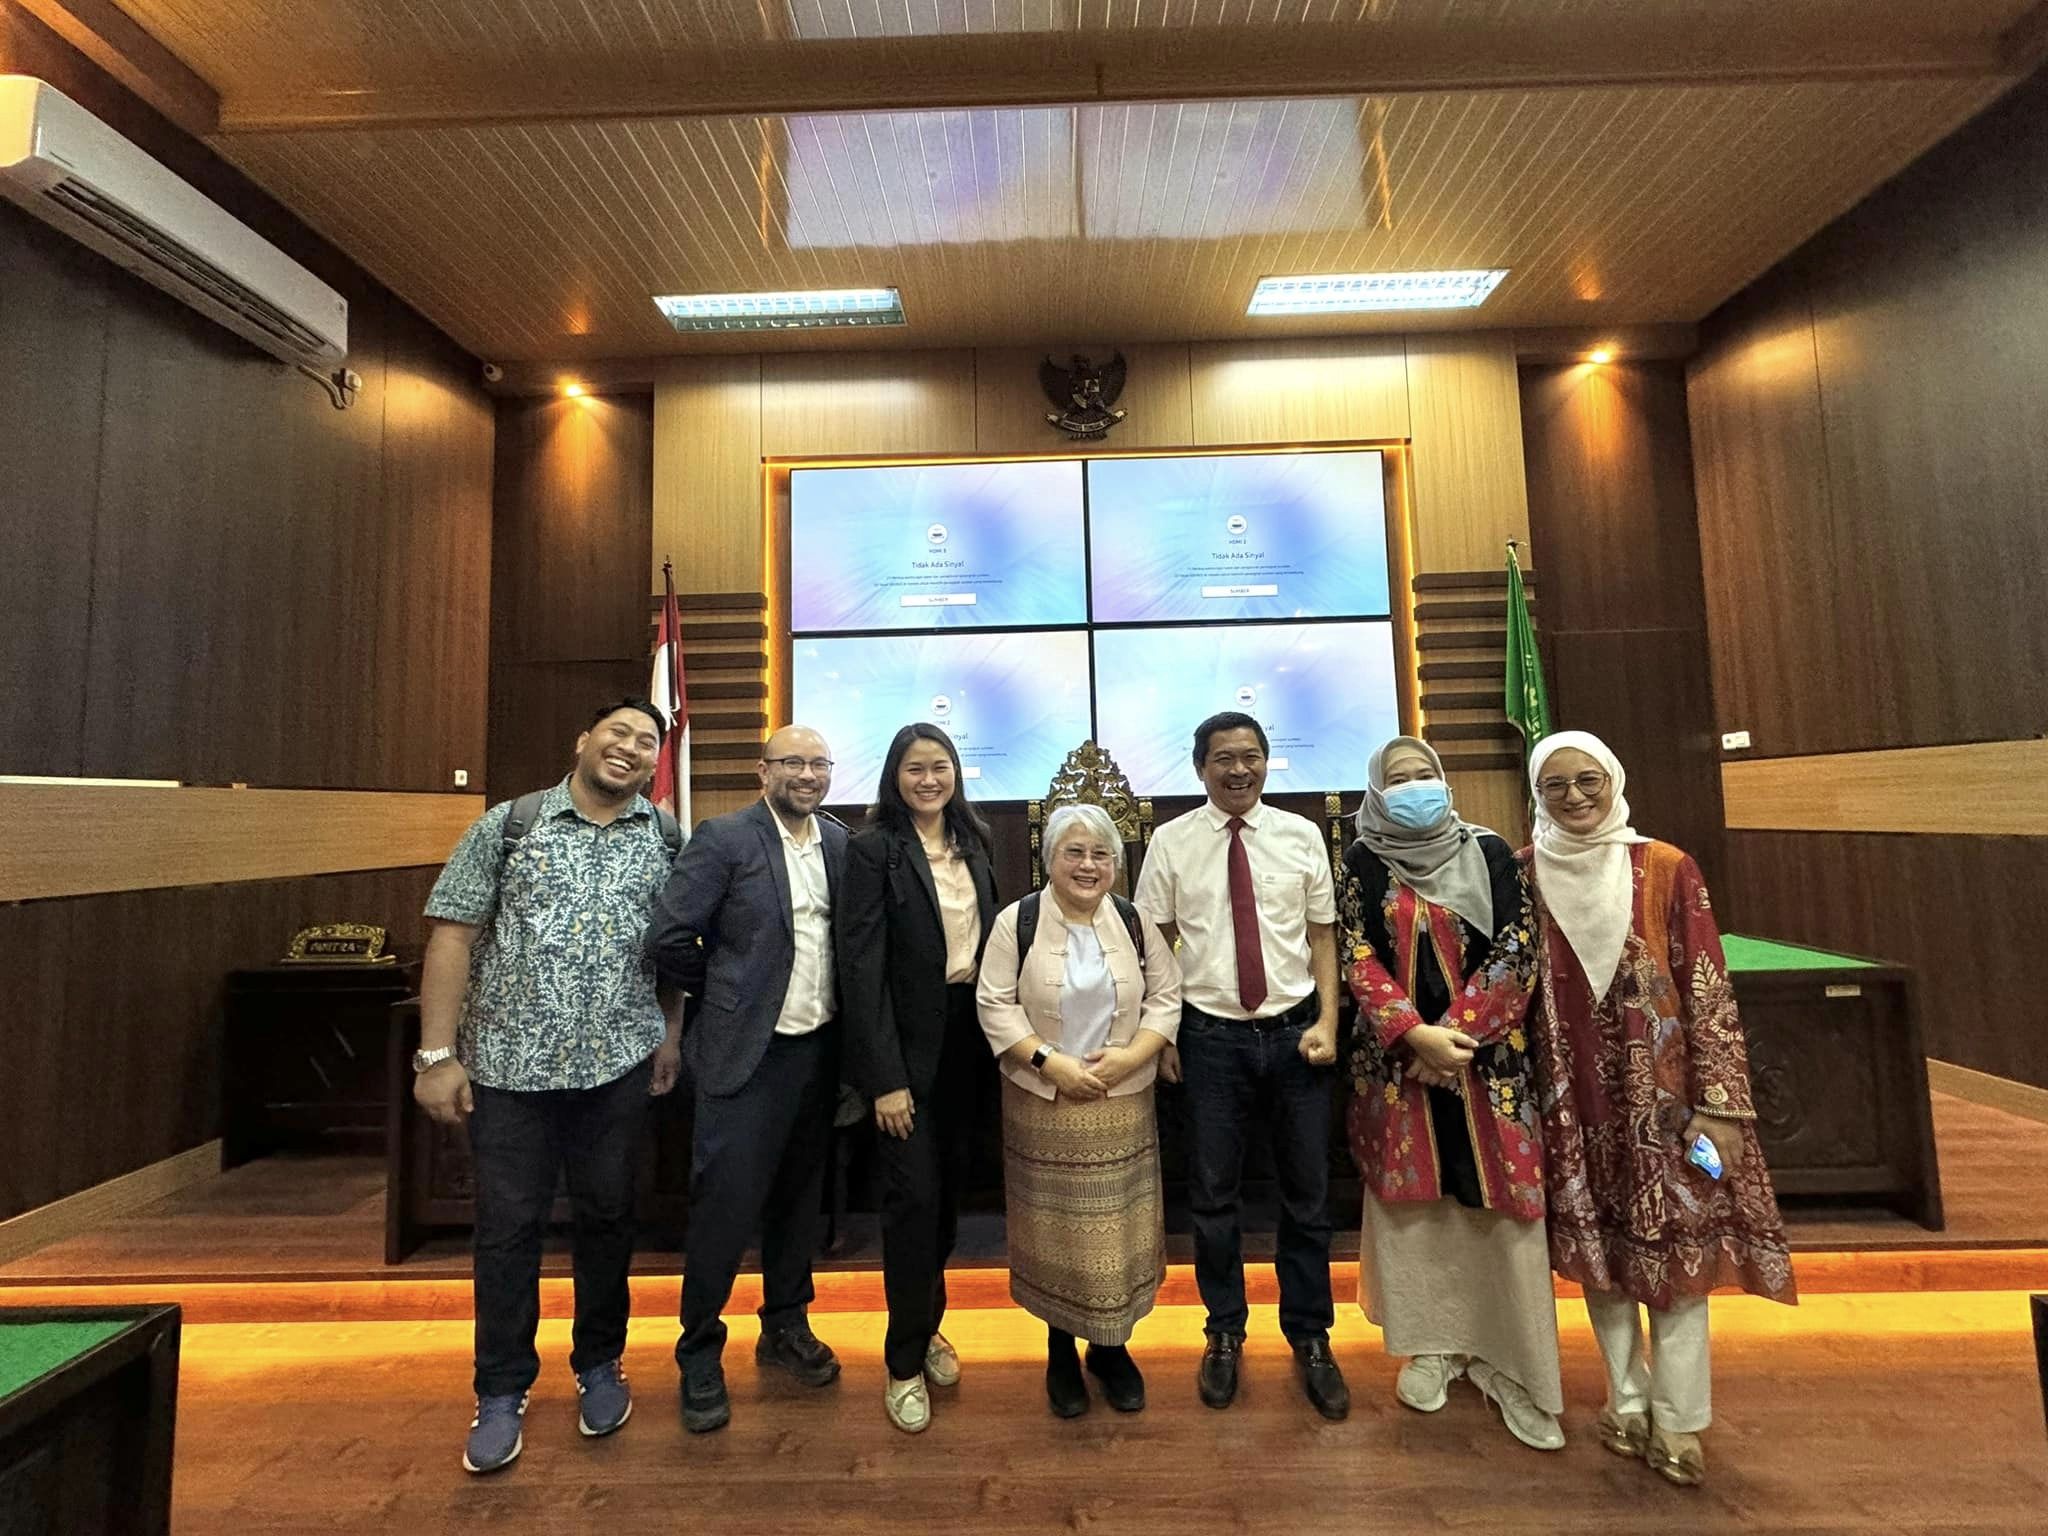 คณะนิติศาสตร์ มหาวิทยาลัยเชียงใหม่ ลงนามบันทึกข้อตกลงความร่วมมือทางวิชาการ (MoU) กับ Faculty of Law, Sriwijaya University (UNSRI)